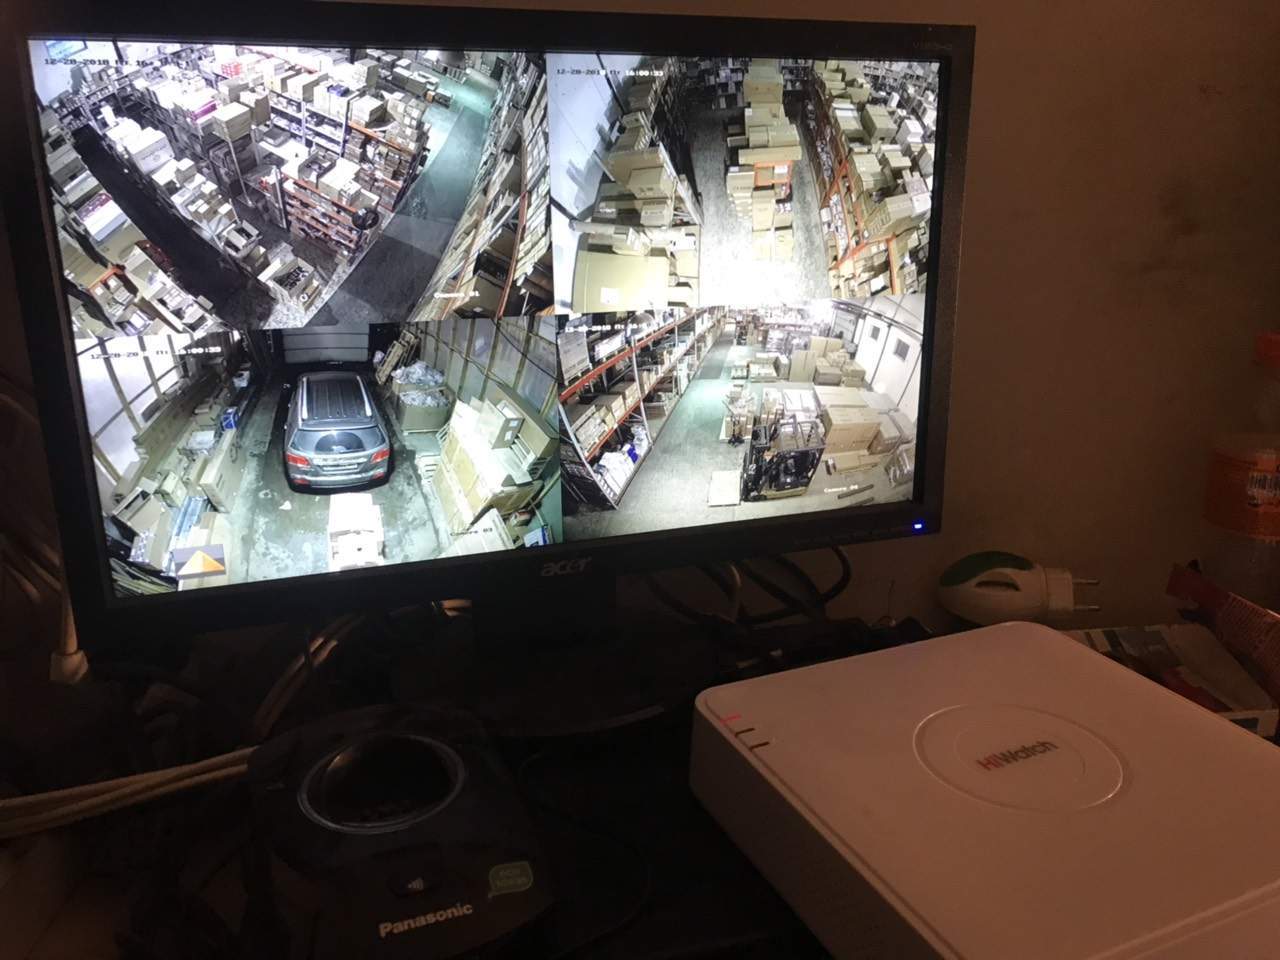 видеорегистратор и монитор для видеонаблюдения на складе